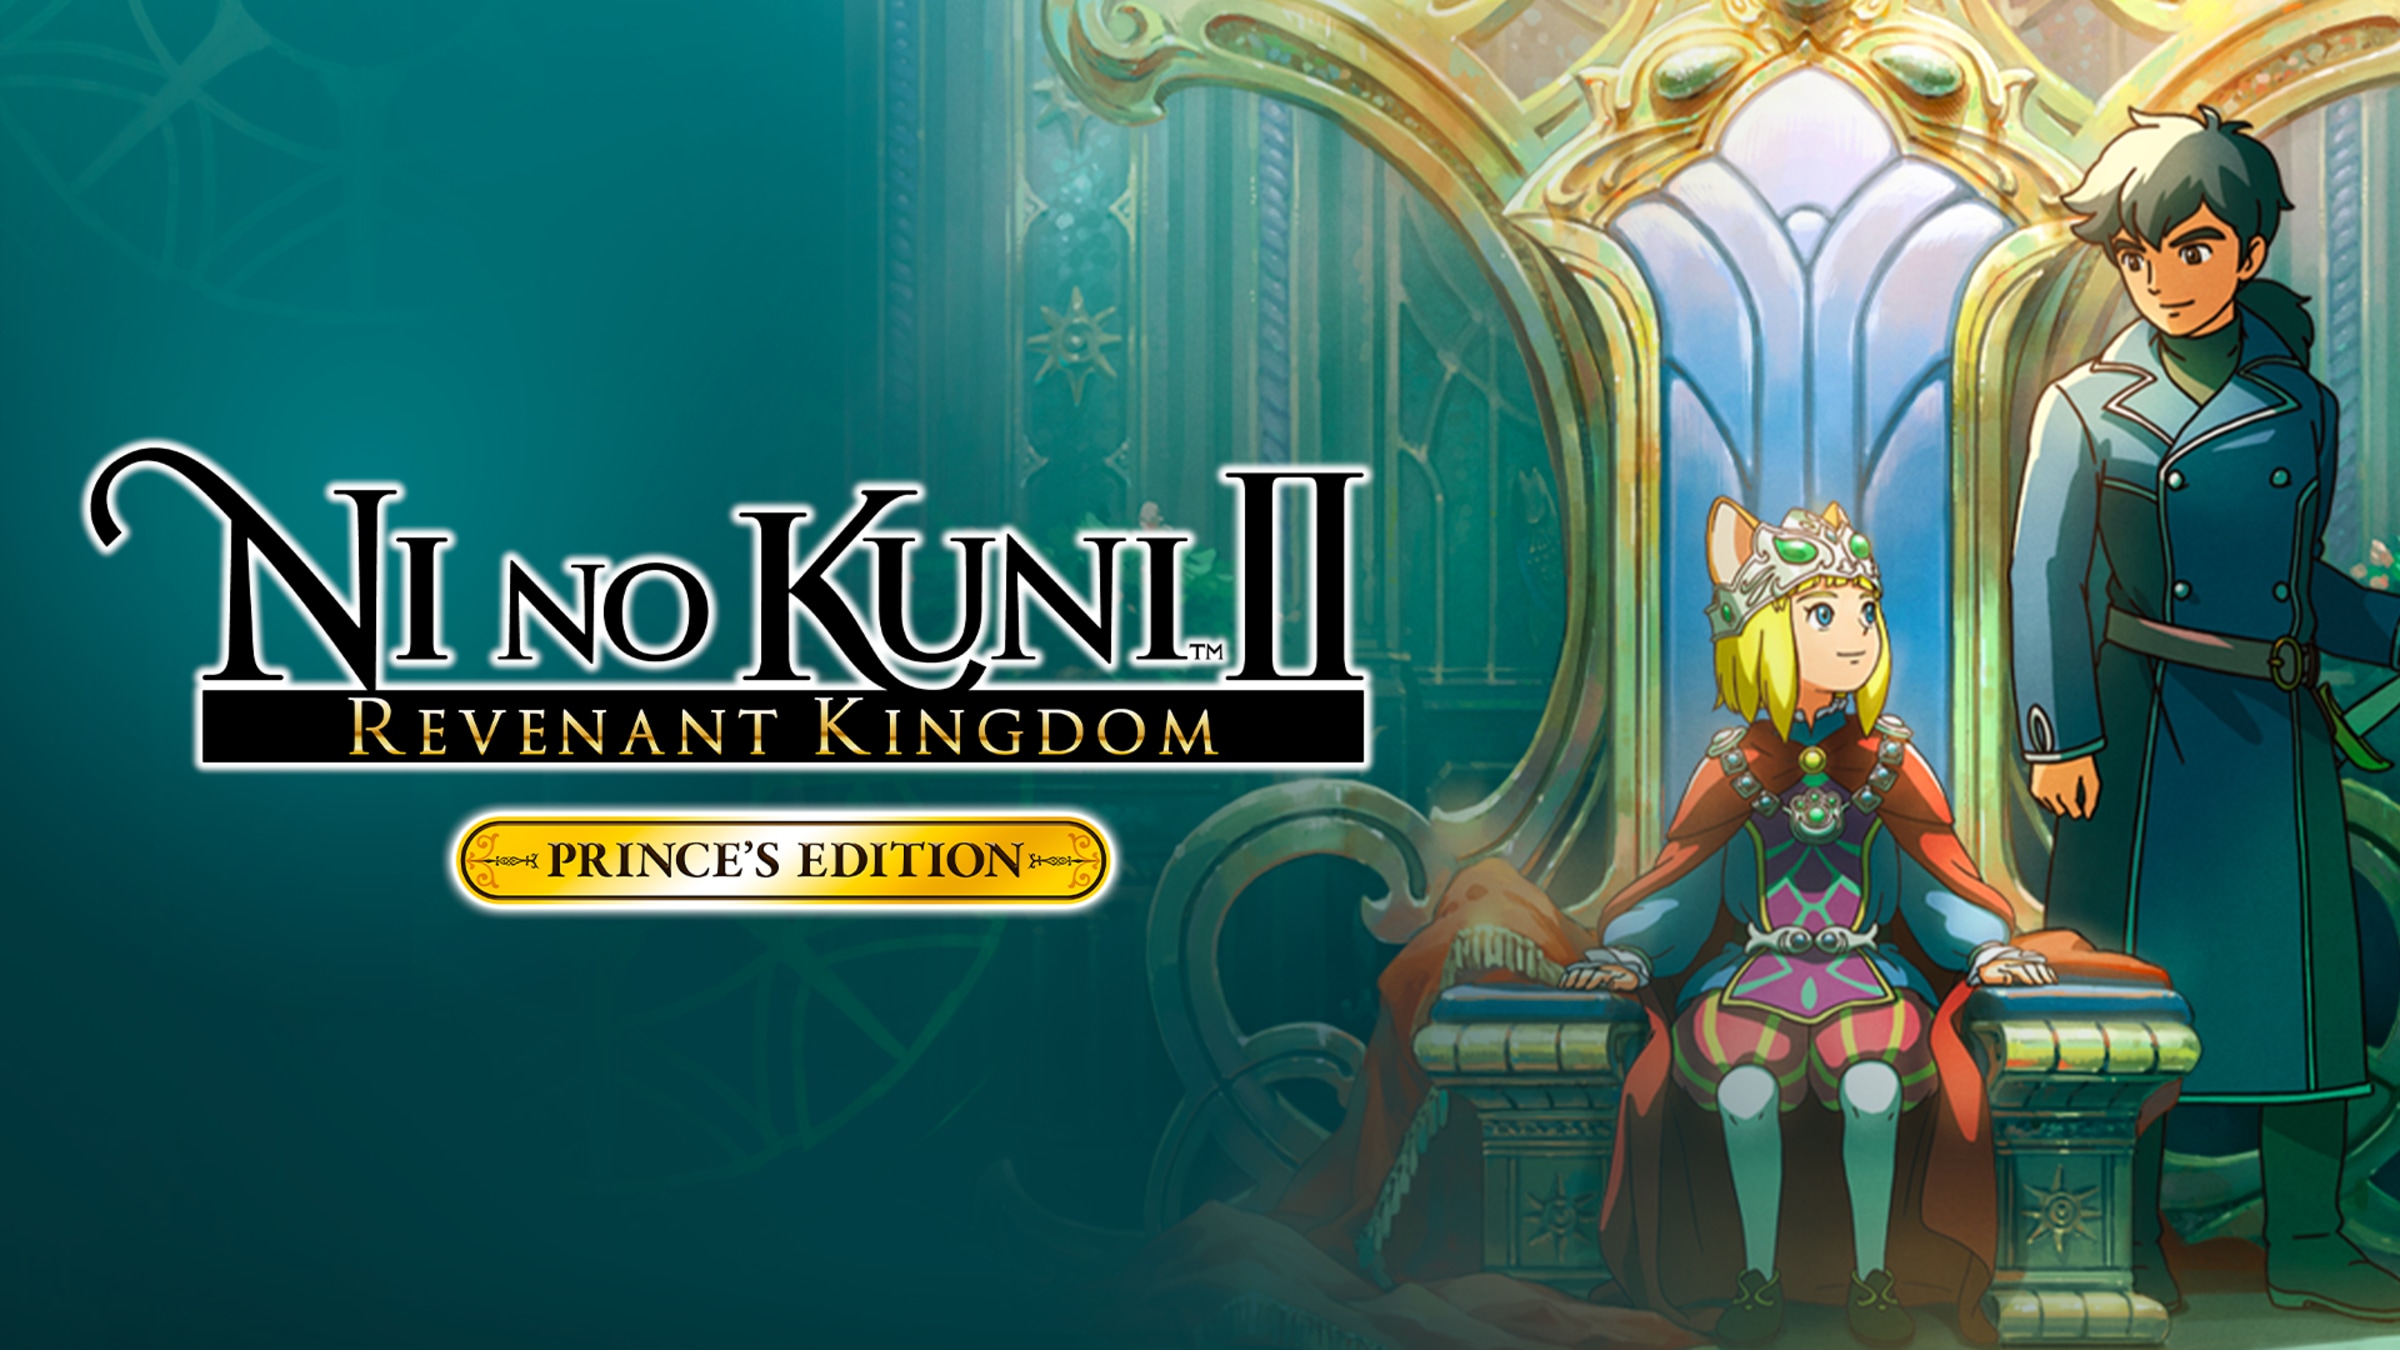 Saindo por R$ 25,58: Ni no Kuni II: Revenant Kingdom PRINCE'S EDITION | Pelando